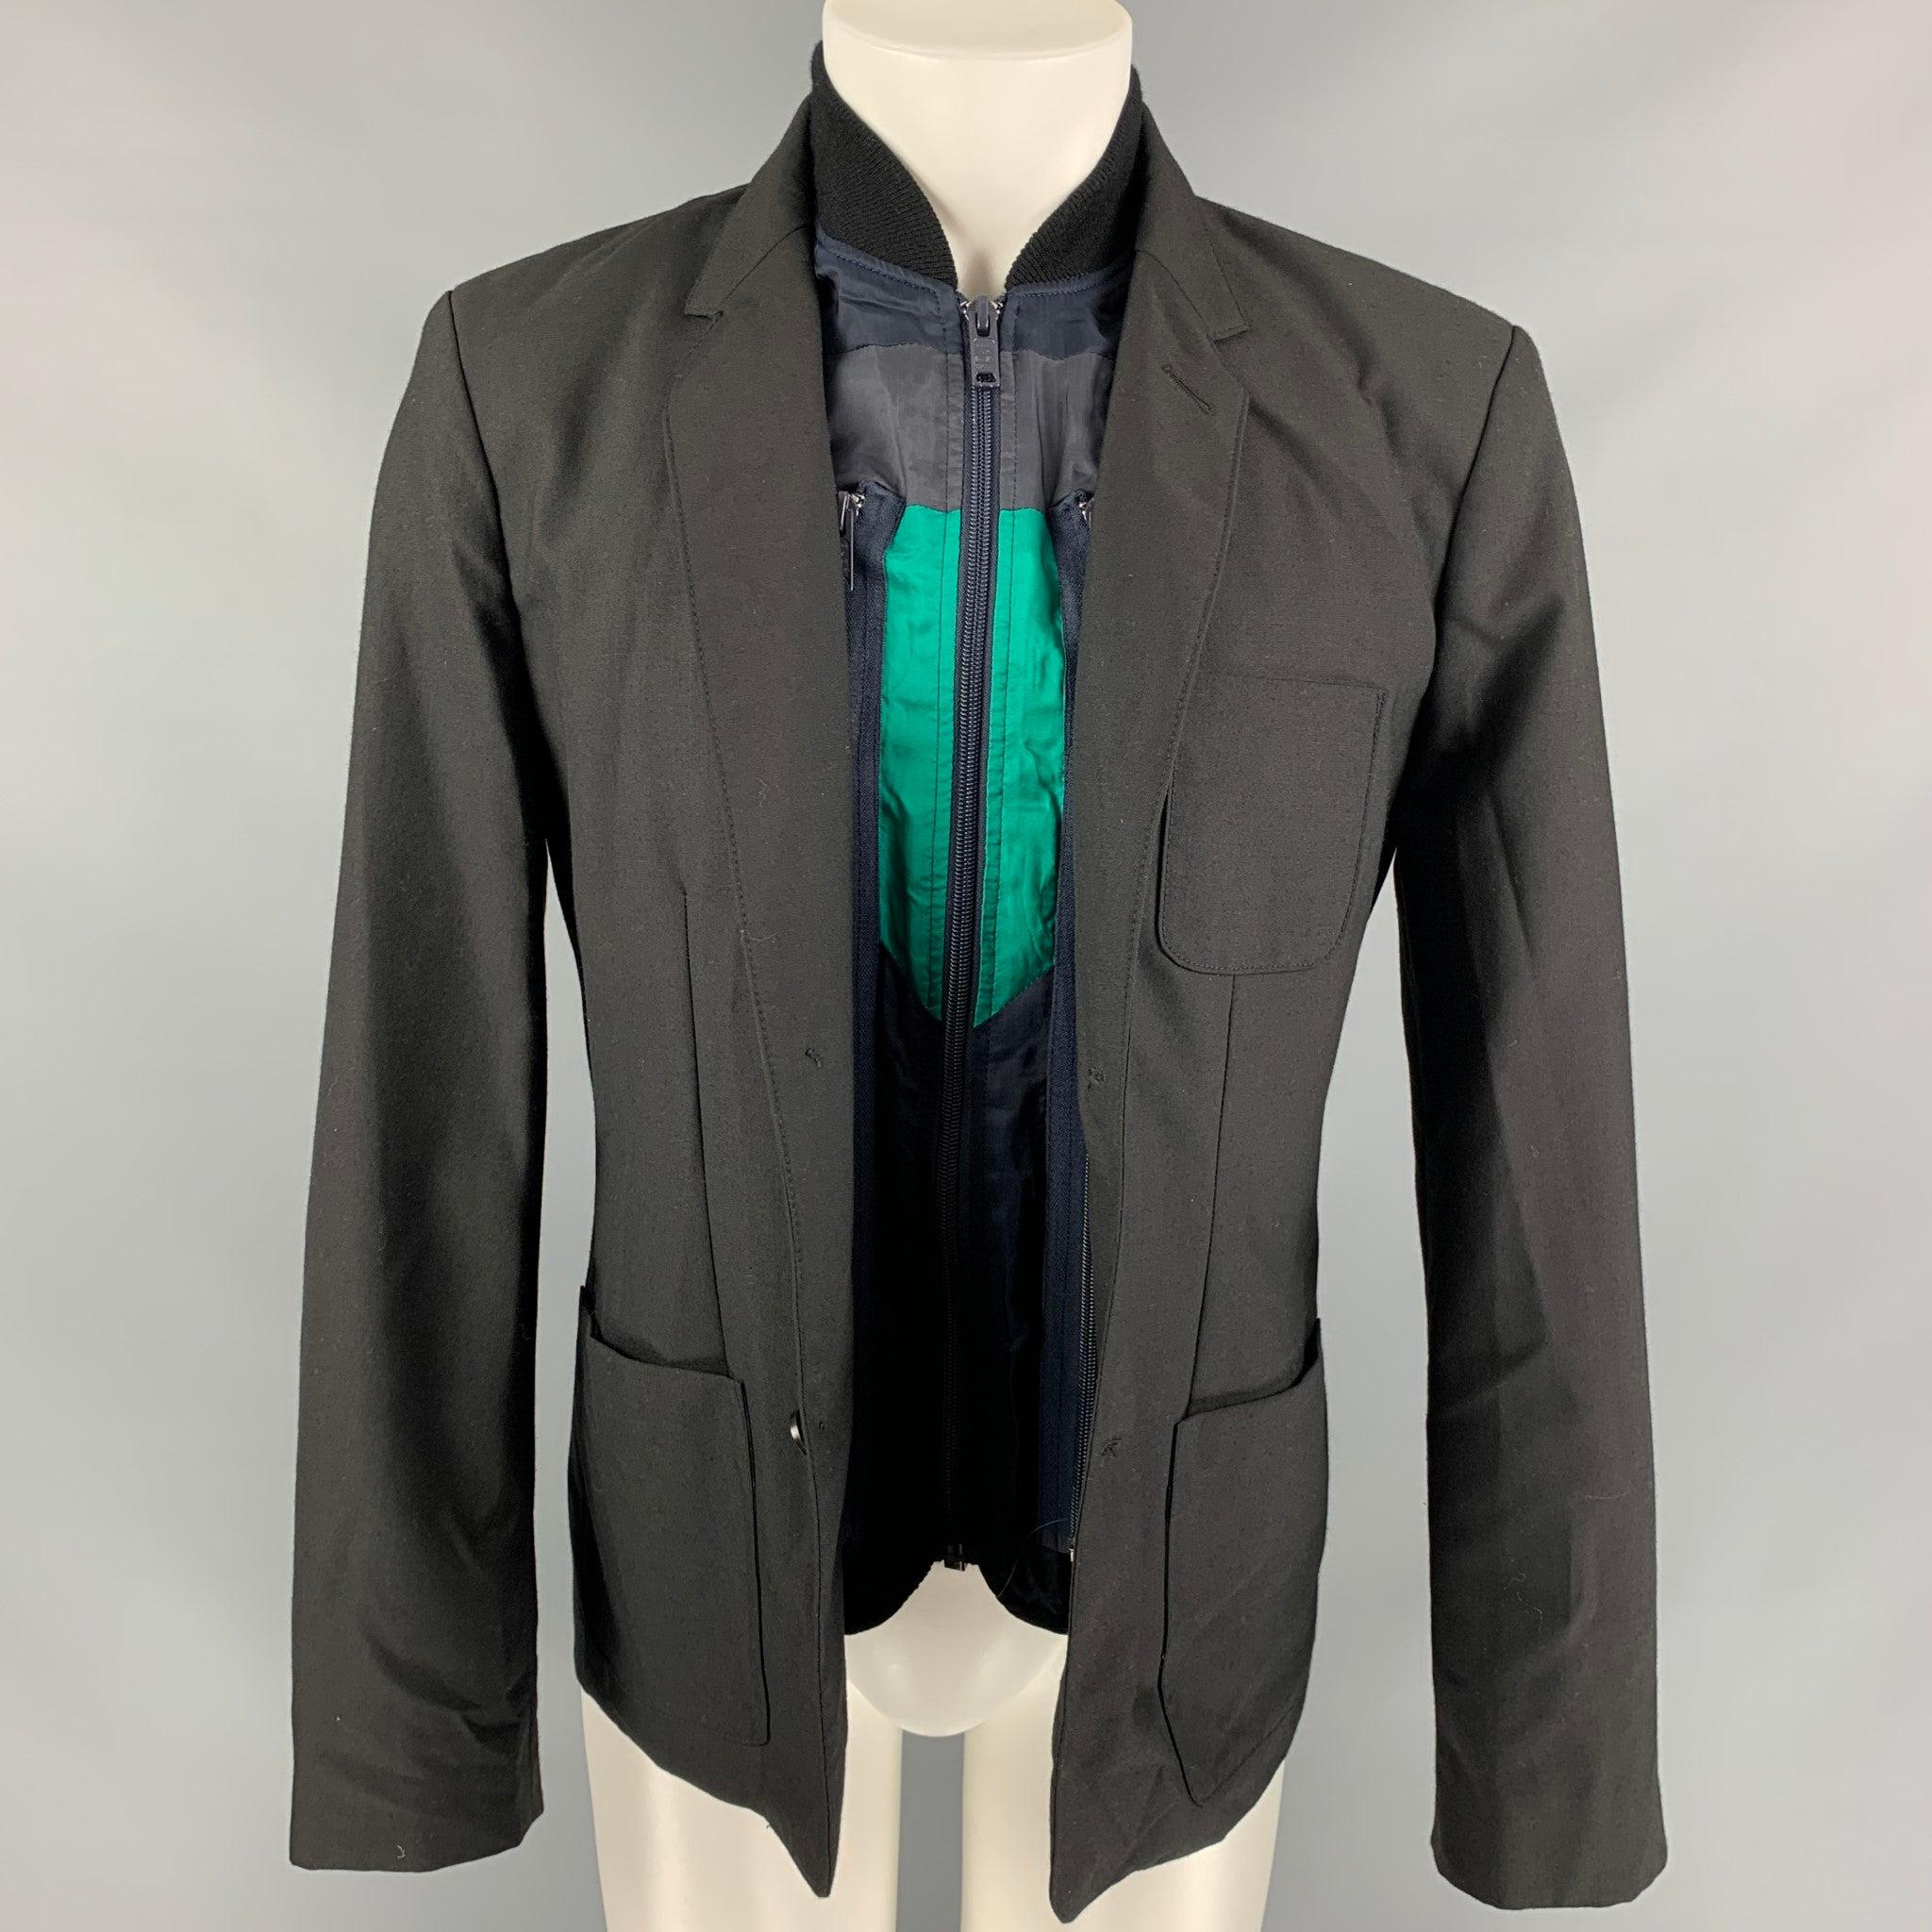 La veste MARC by MARC JACOBS se compose d'un mélange de polyester noir et marine et présente un gilet amovible, des poches plaquées, un revers échancré et une fermeture à trois boutons.
Très bien
Etat d'occasion.  

Marqué :   L 

Mesures : 
